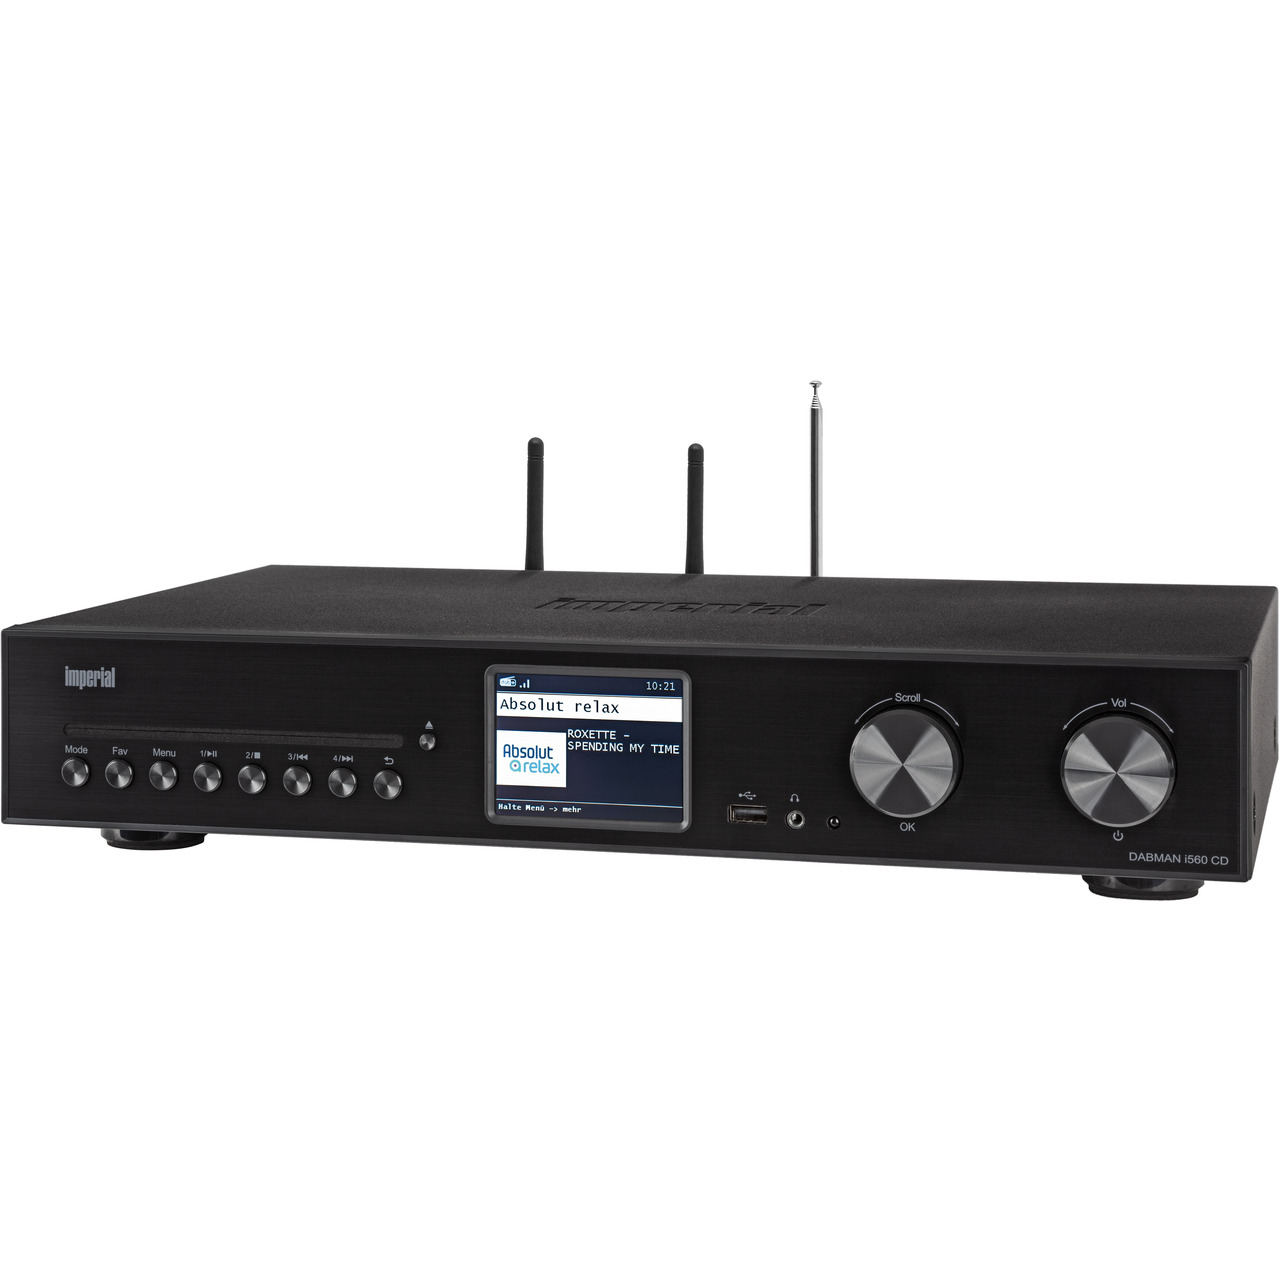  Imperial Radio-Hi-Fi-Tuner DABMAN i560 CD- DAB+-UKW-Internetradio- Verstärker- Bluetooth- CD-Player unter Multimedia